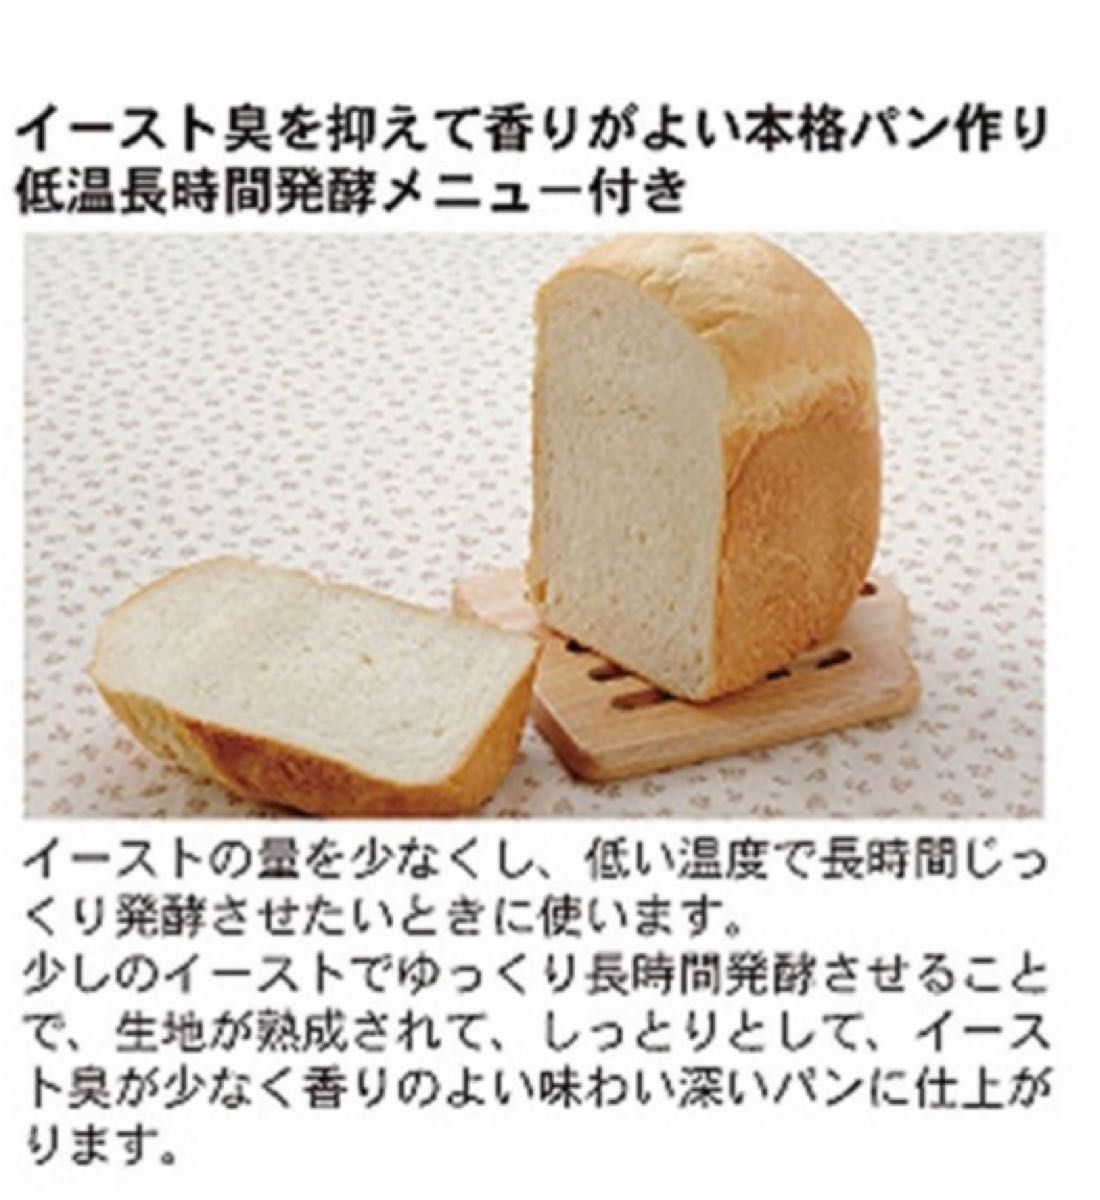 ホームベーカリー 【ふっくらパン屋さん】 1斤用 